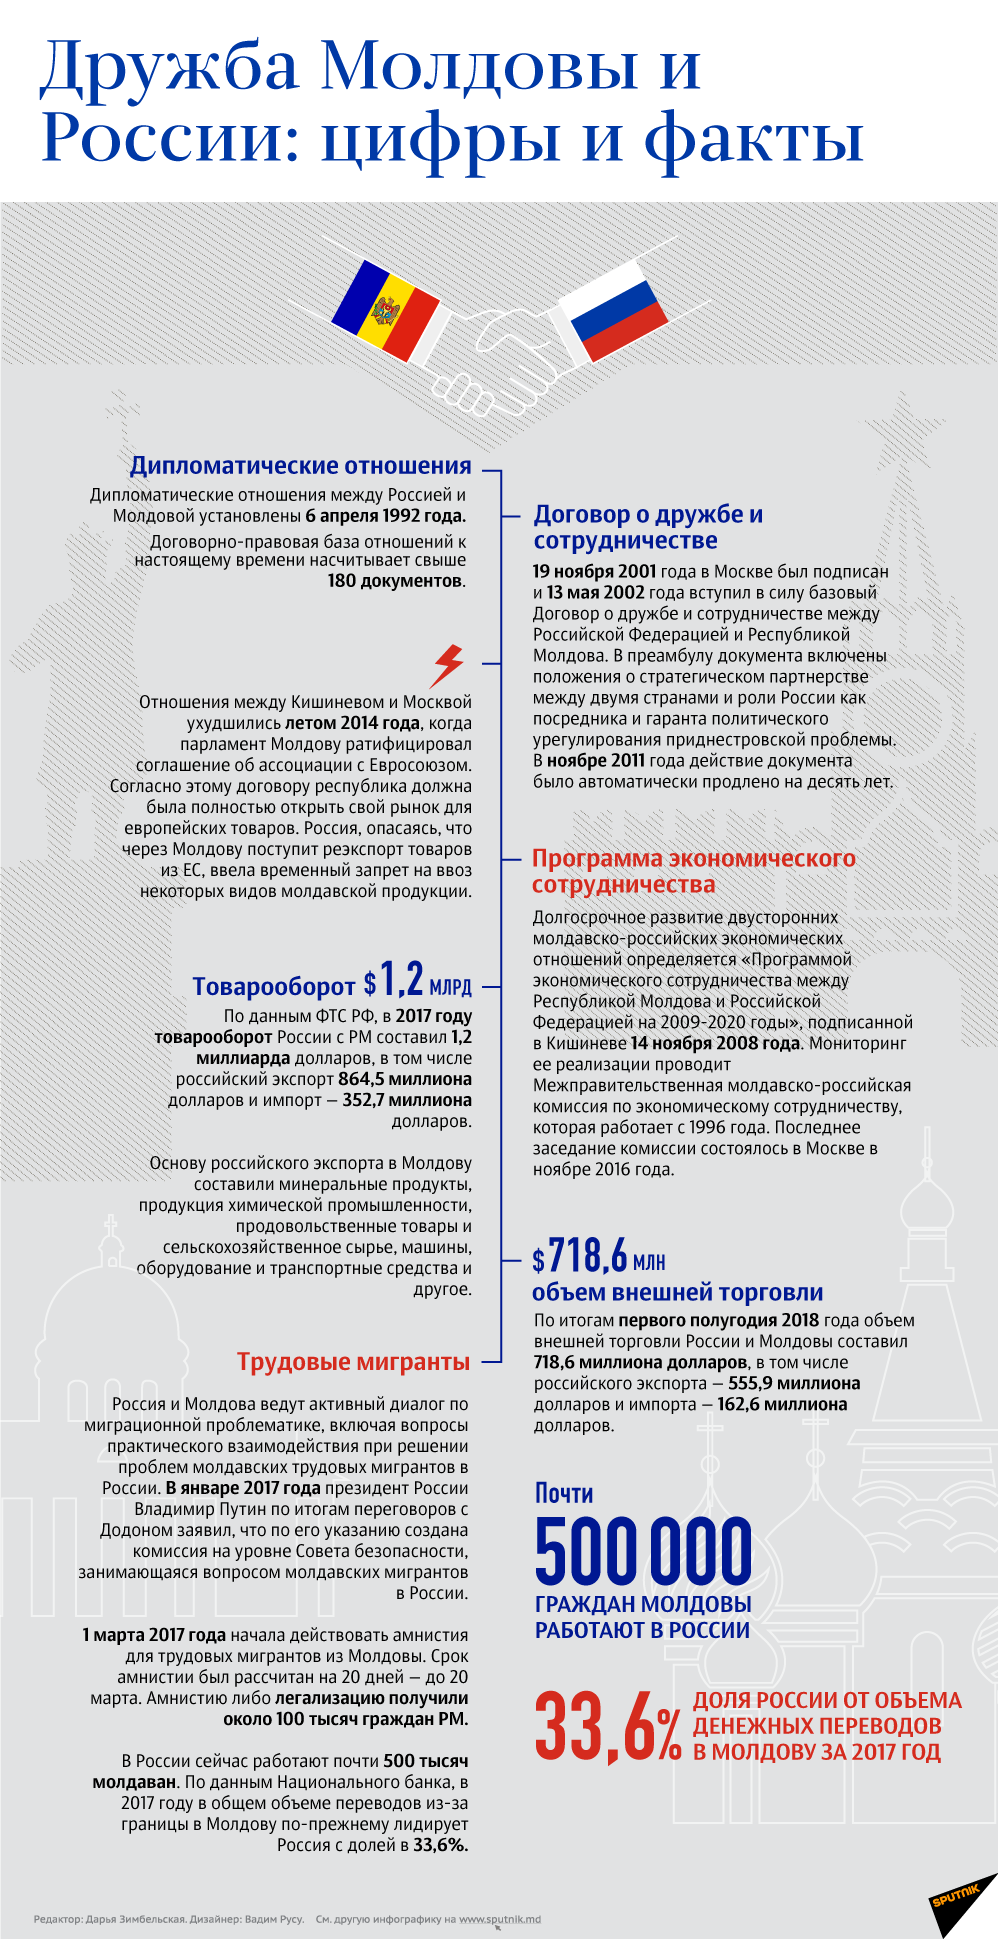 Дружба Молдовы и России: цифры и факты - Sputnik Молдова